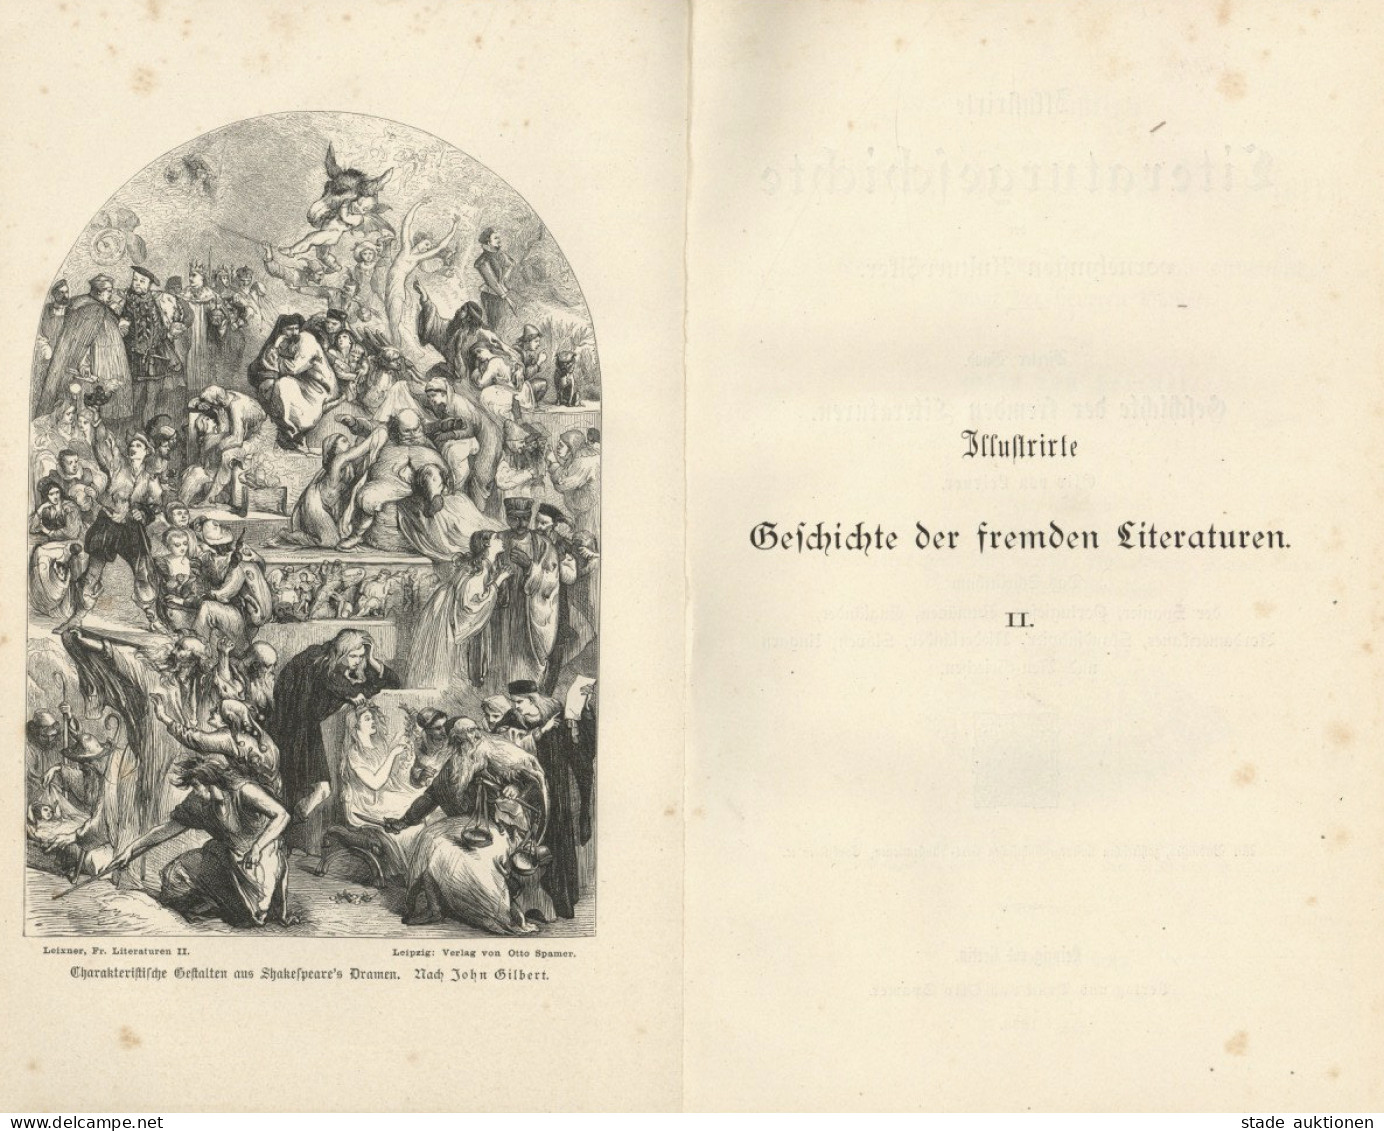 Buch Lot Mit 2 Büchern Illustrierte Geschichte Der Fremden Literaturen Band I Ud II Von Leixner, Otto 1883, Verlag Spame - Livres Anciens